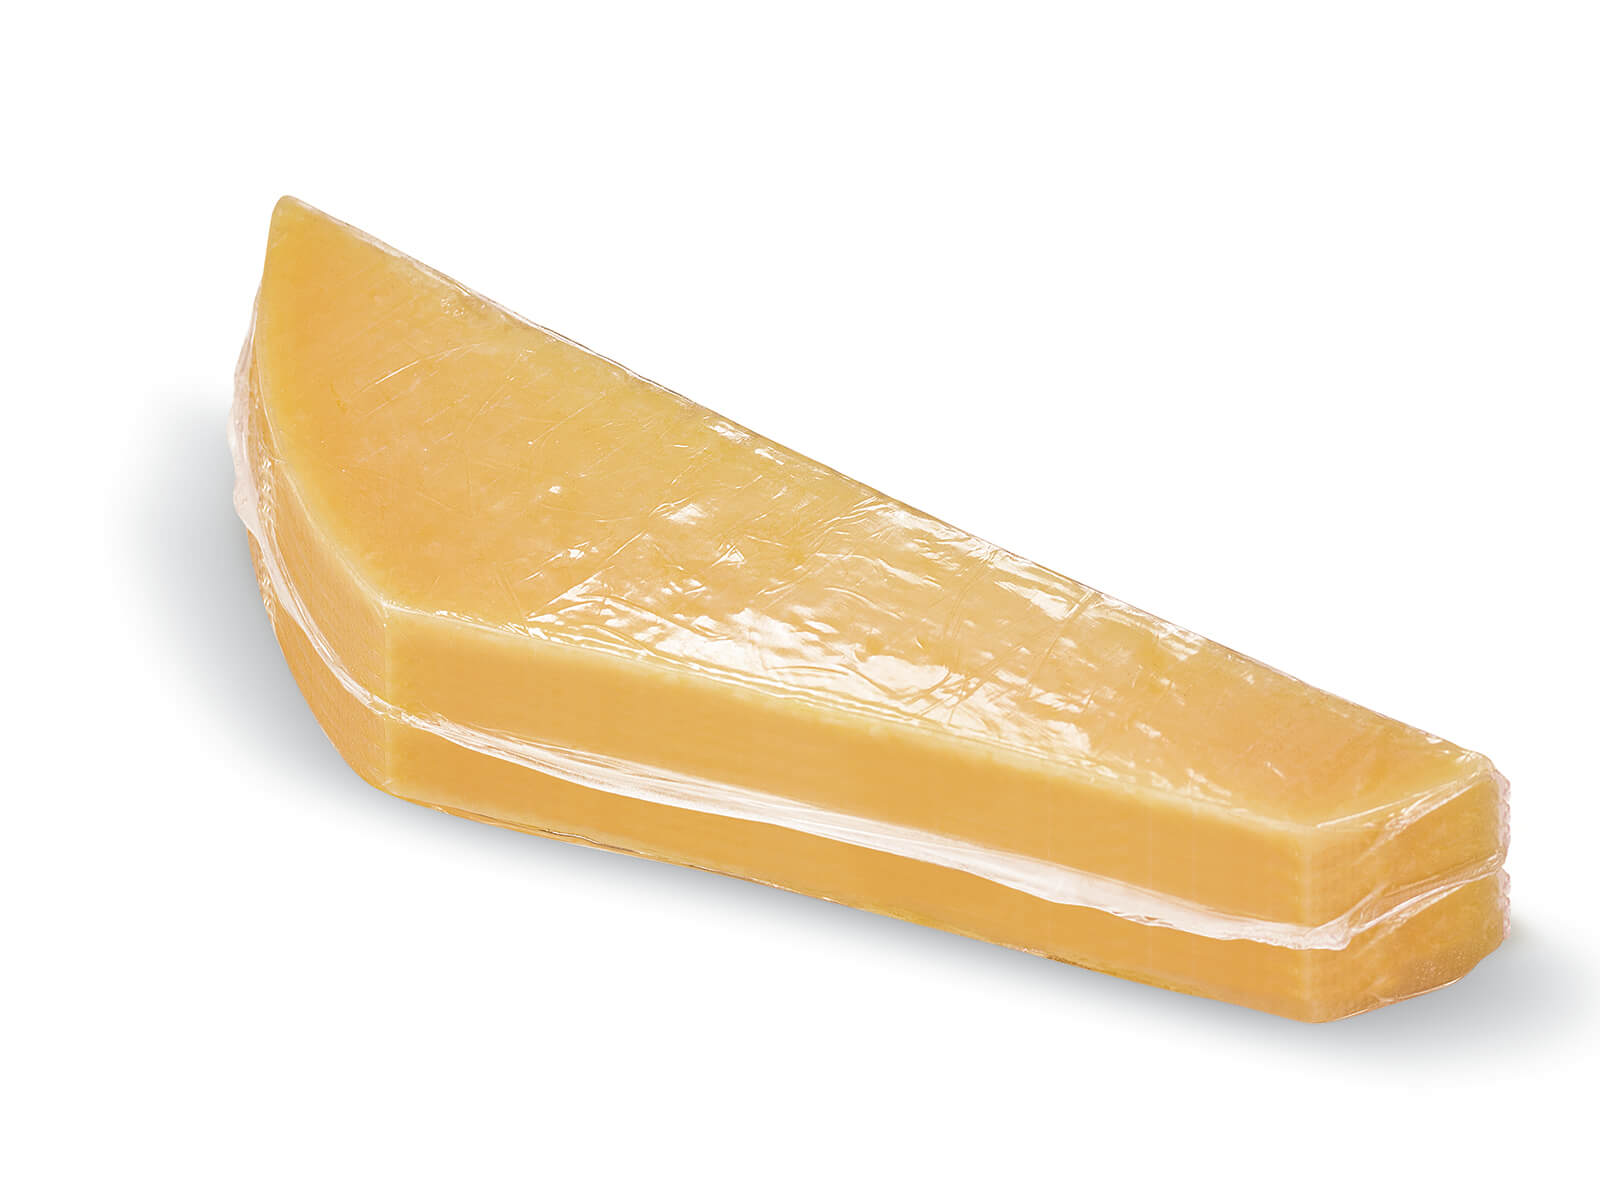 Käse für den Verkauf vakuumieren - was muss man beachten?